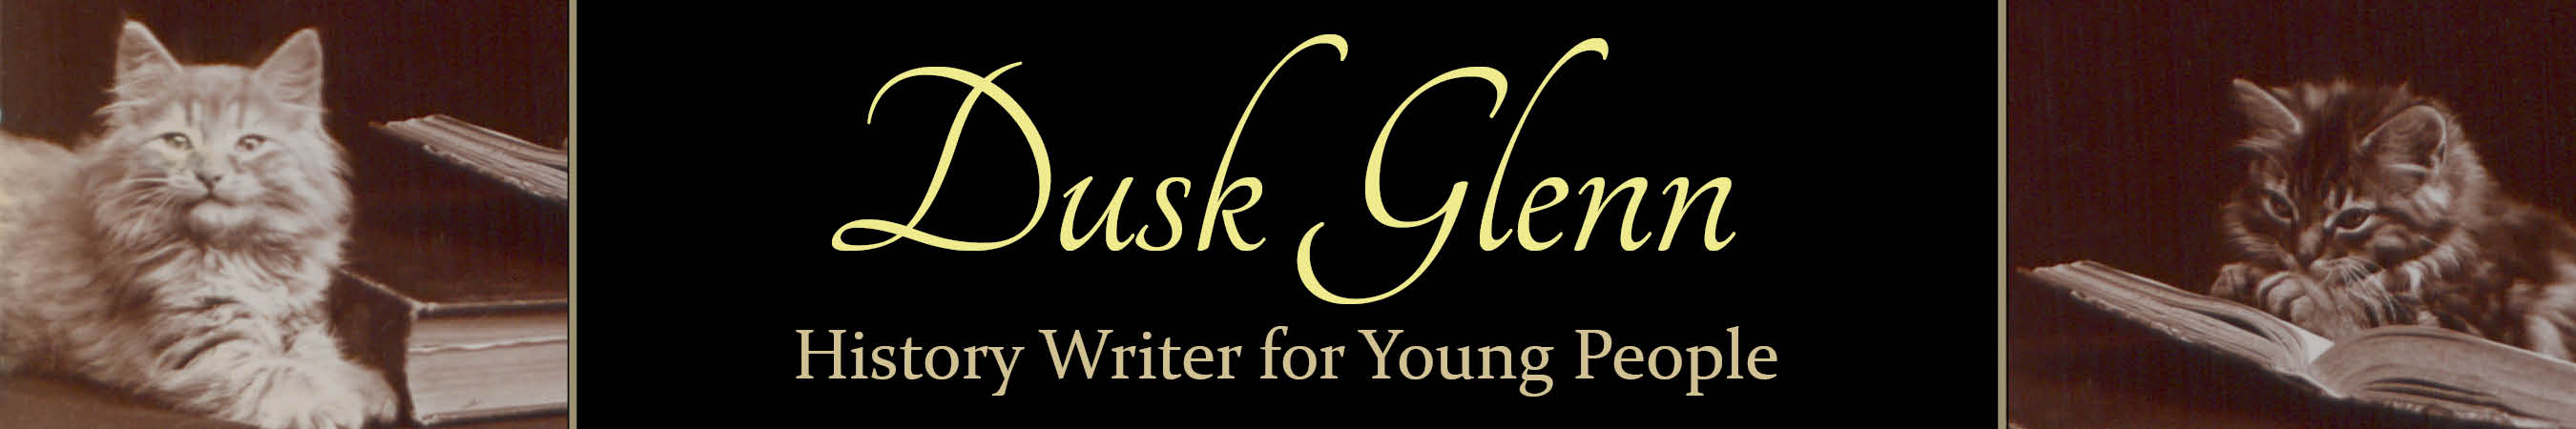 Dusk Glenn: History Writer for Young Readers